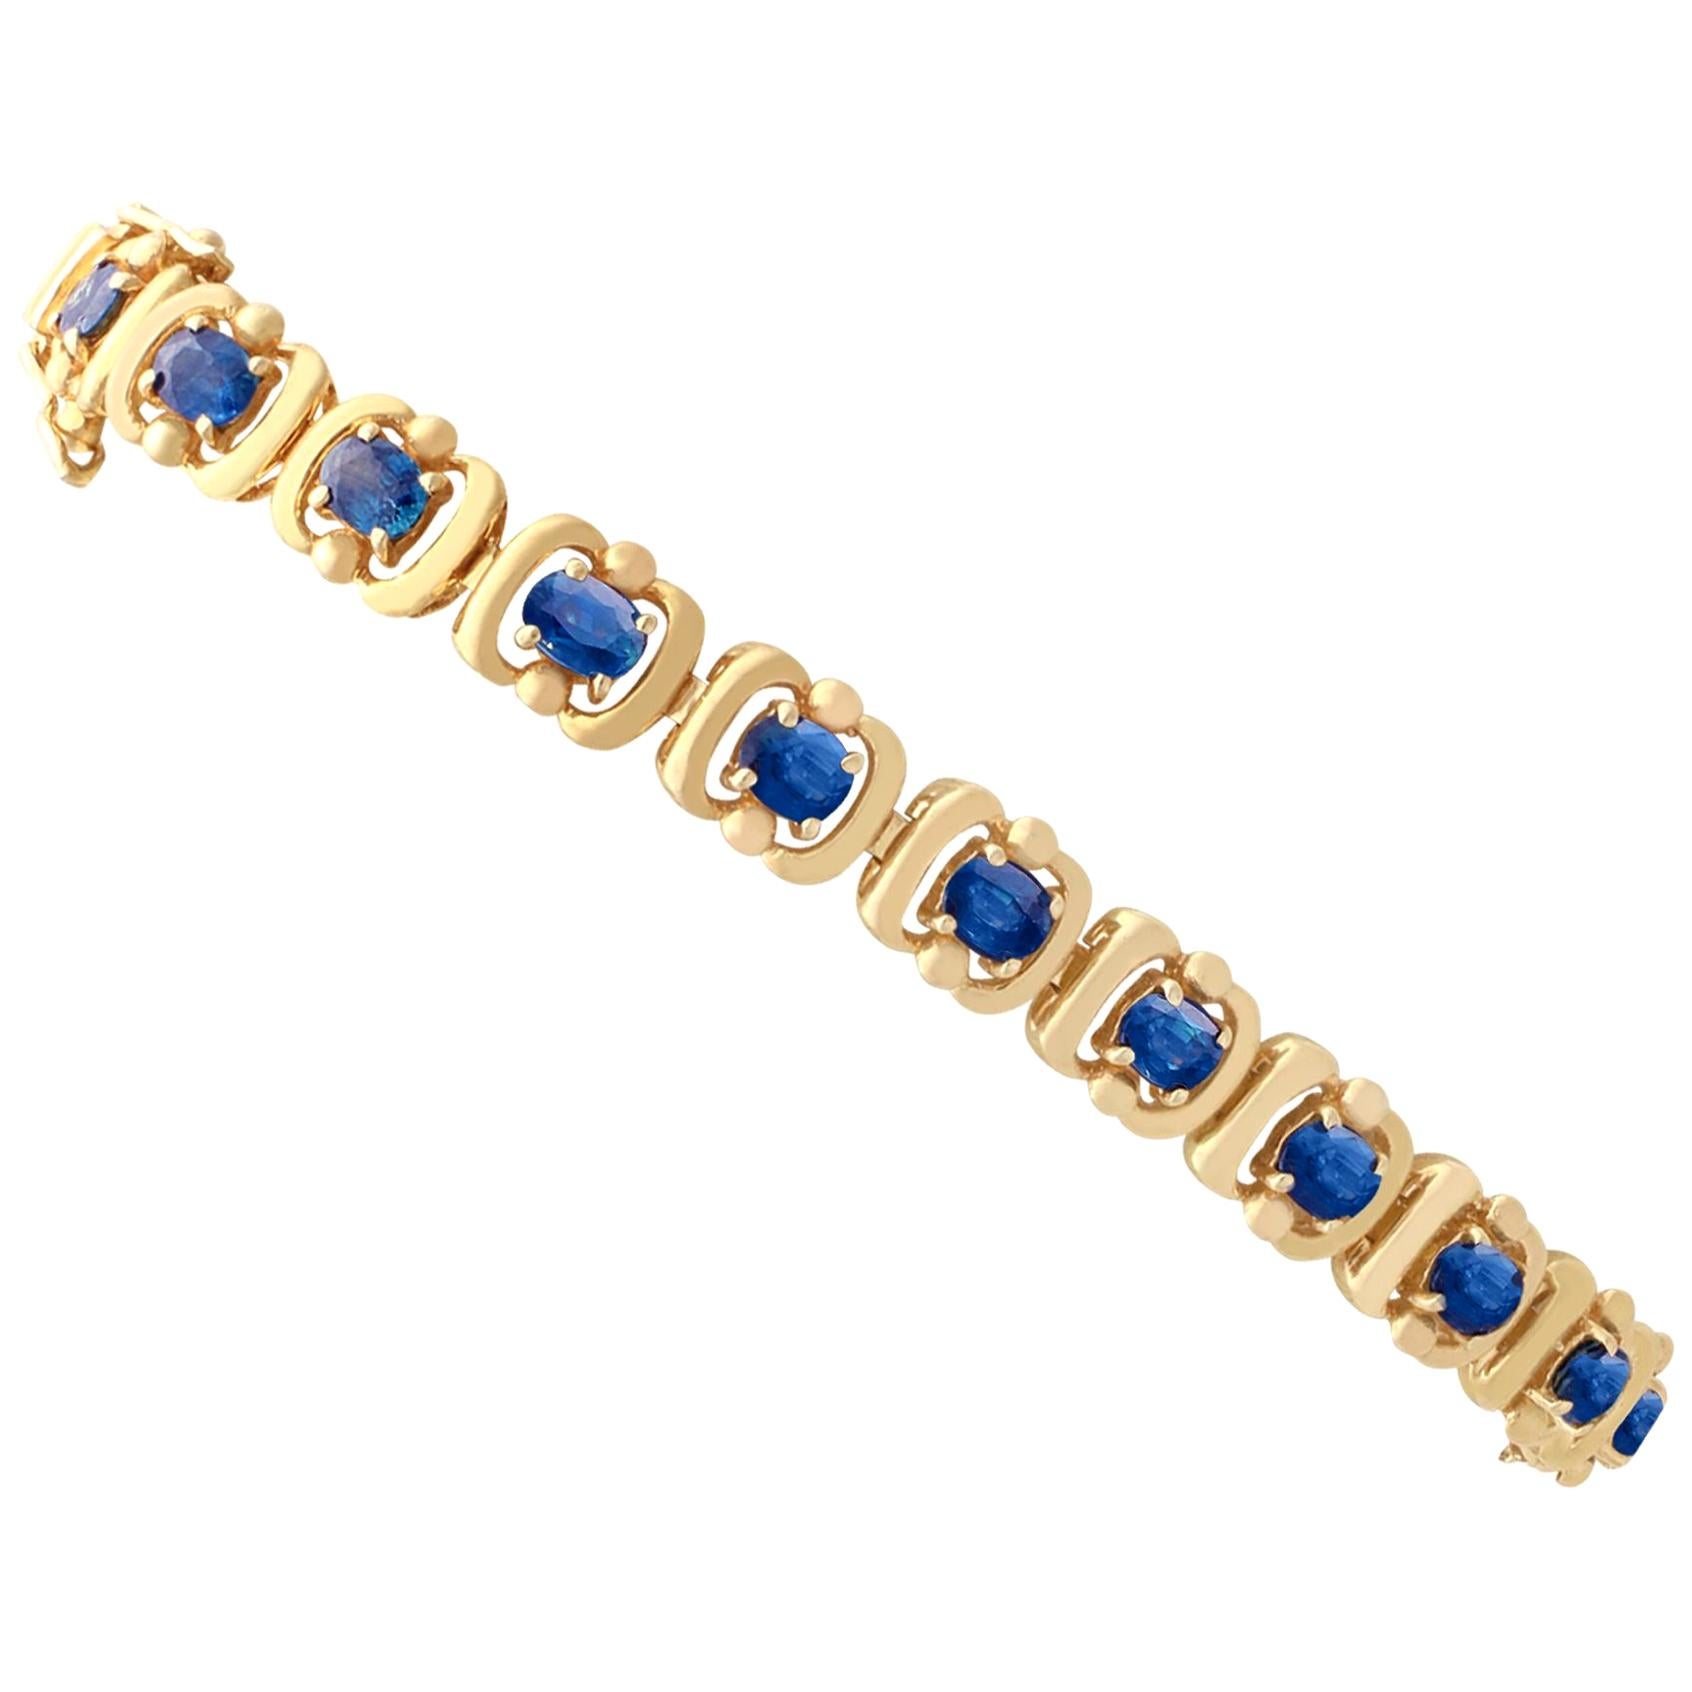 1940s Vintage 4.60 Carat Blue Sapphire Yellow Gold Bracelet